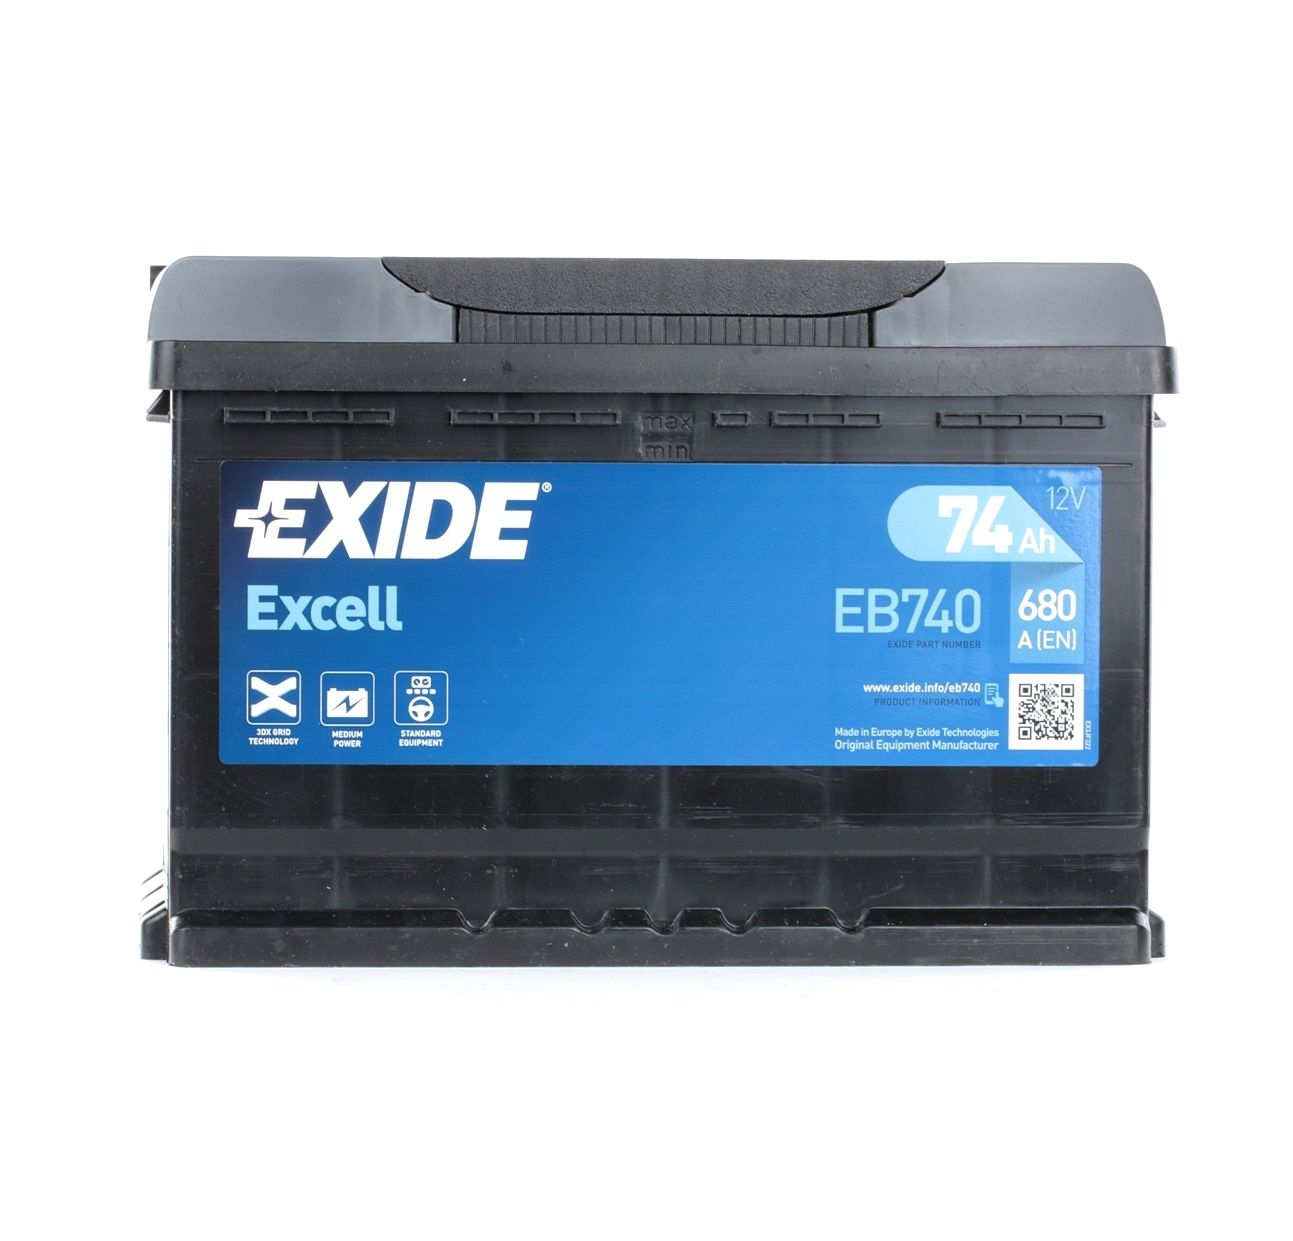 EXIDE EB740 Batterie günstig in Online Shop